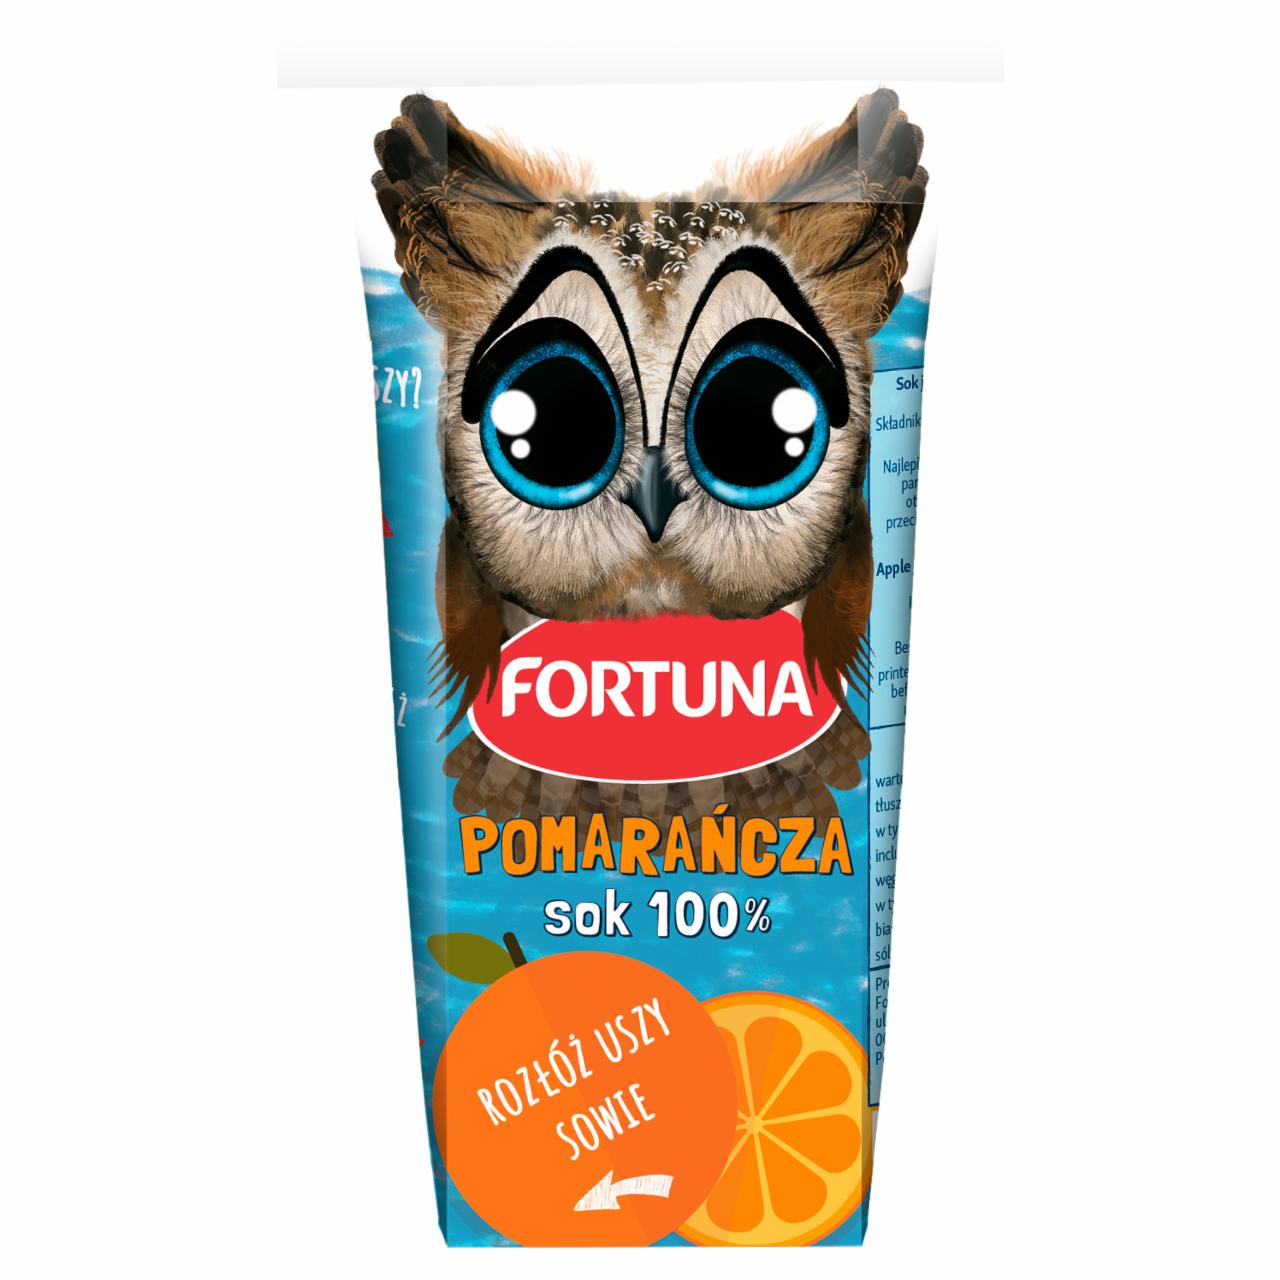 Zdjęcia - Fortuna Sok 100% pomarańcza 200 ml